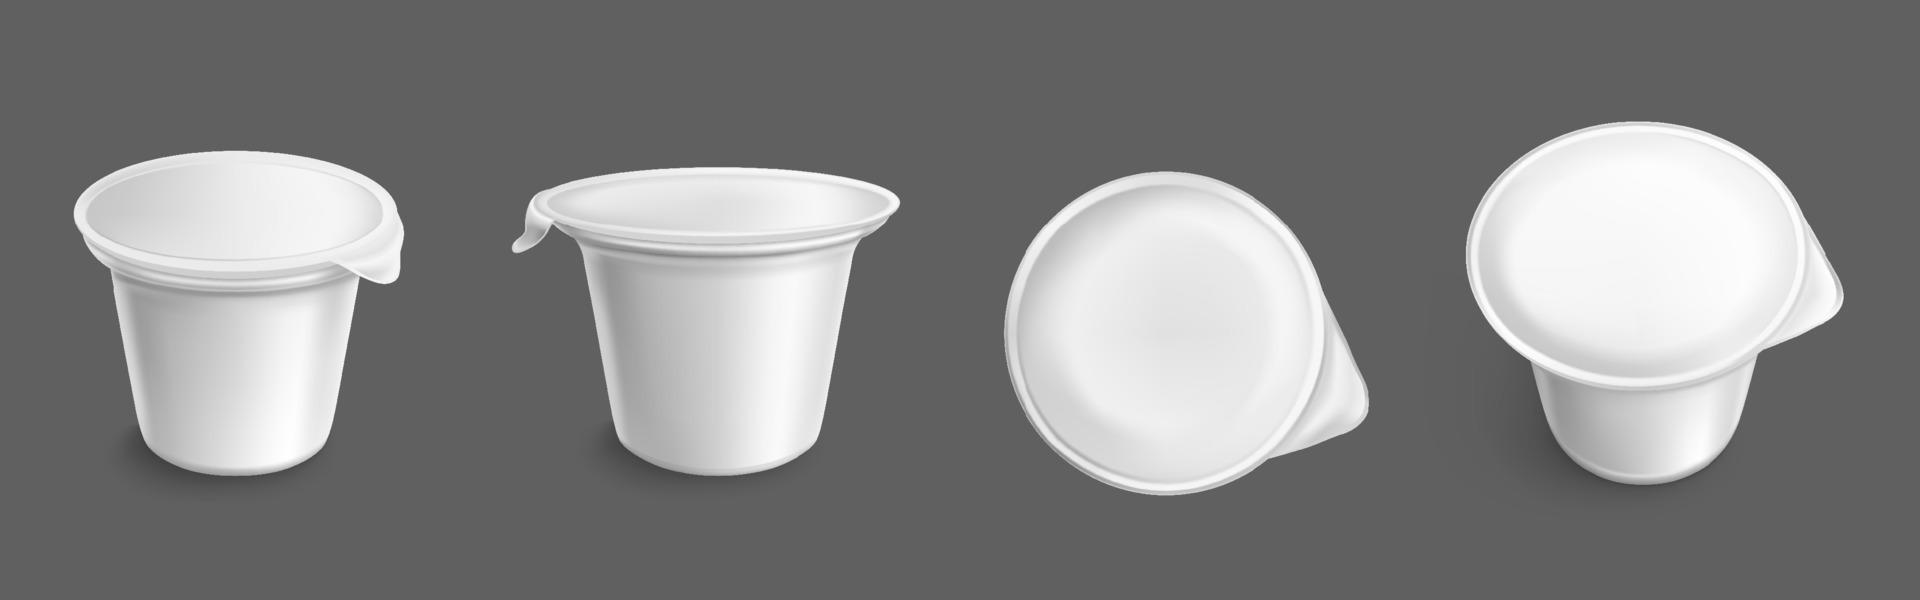 weißer Plastikbehälter für Joghurt vektor